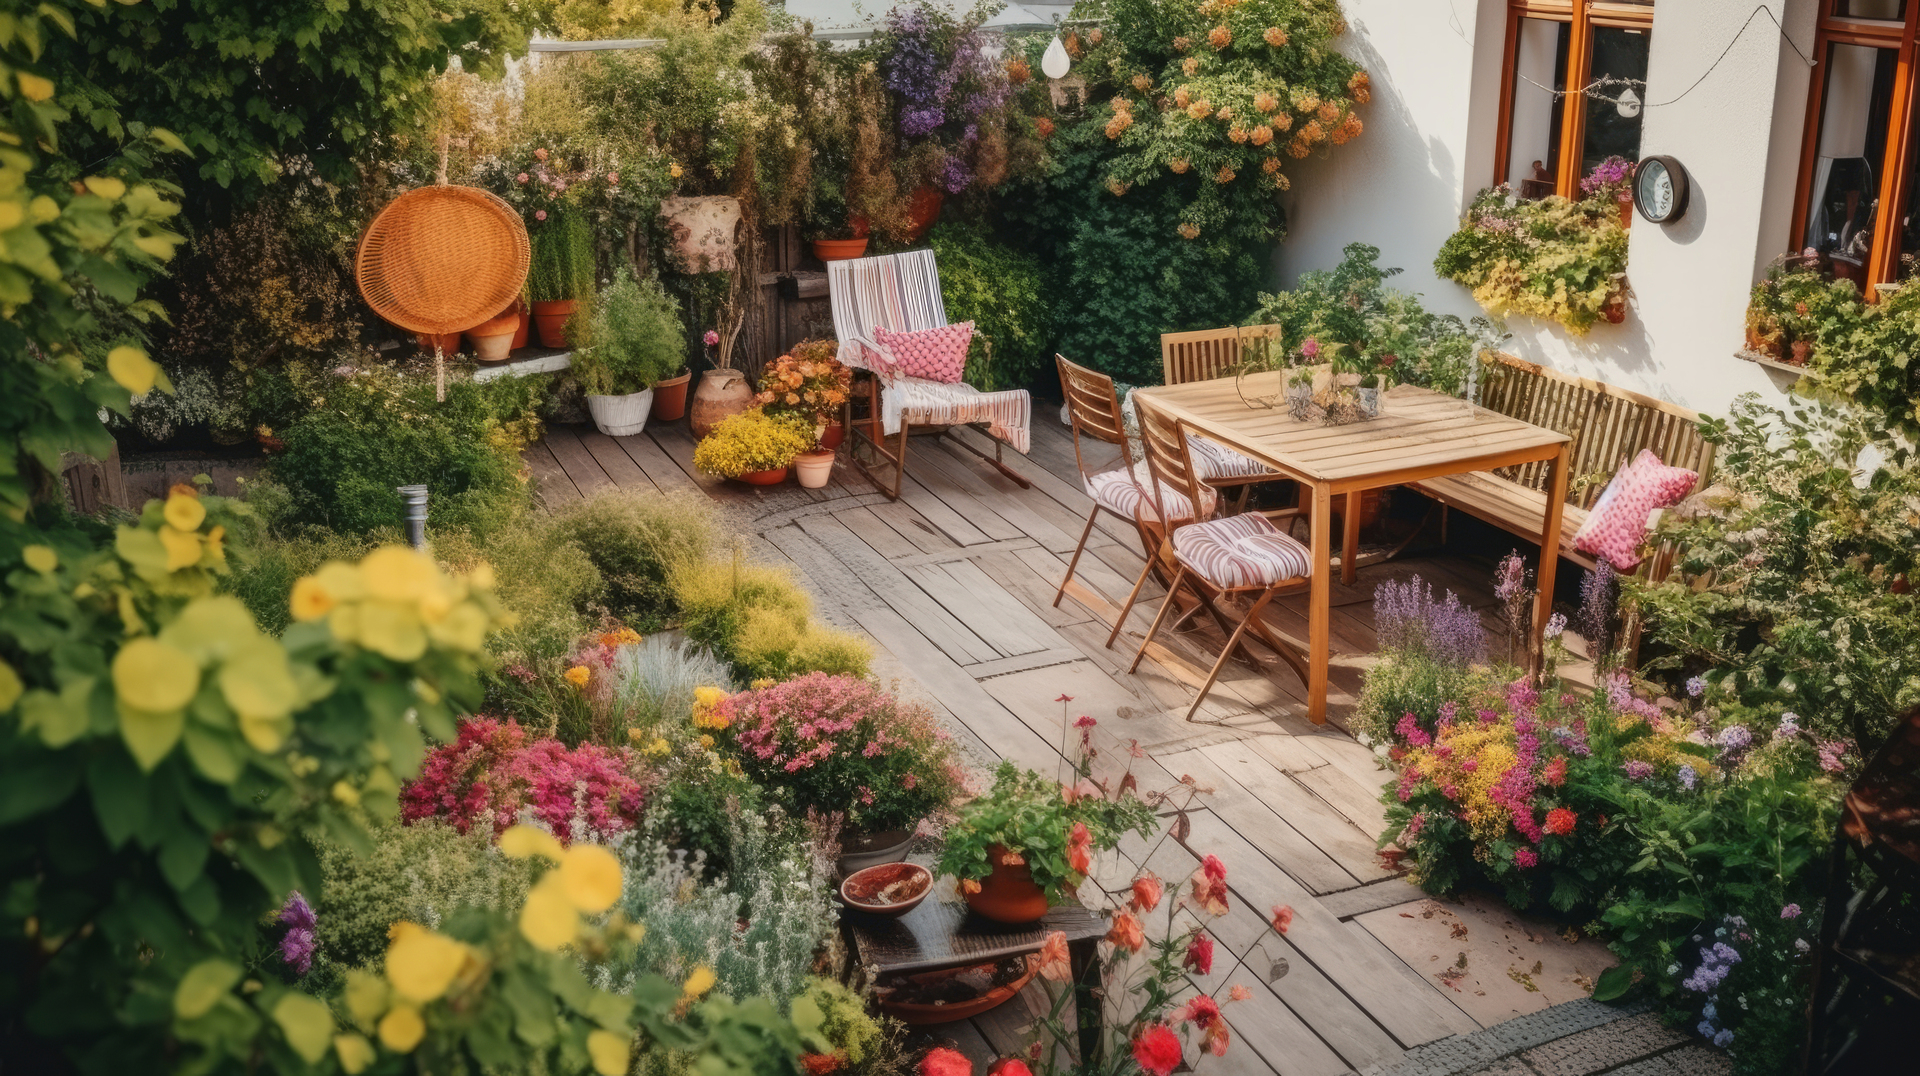 Urokliwy taras ogrodowy z wygodnymi meblami i pełnym kolorowych kwiatów, tworzący atmosferę relaksu i ucieczki od codzienności